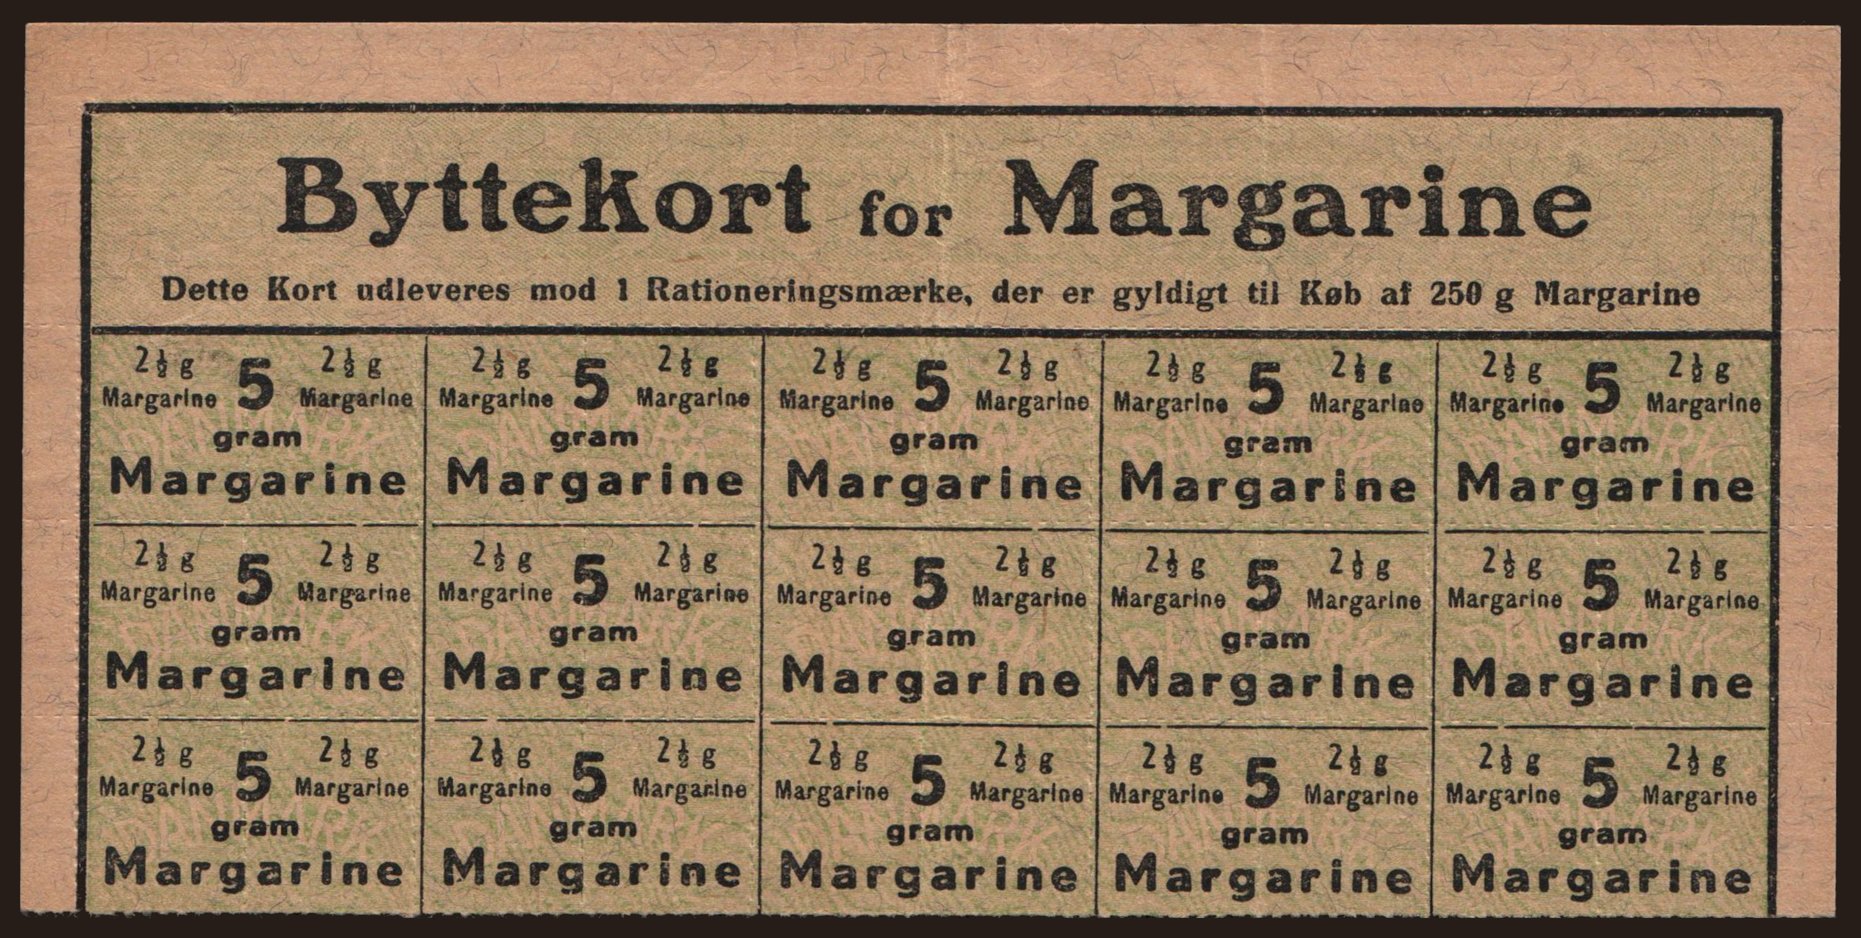 Byttekort for Margarine, 1919